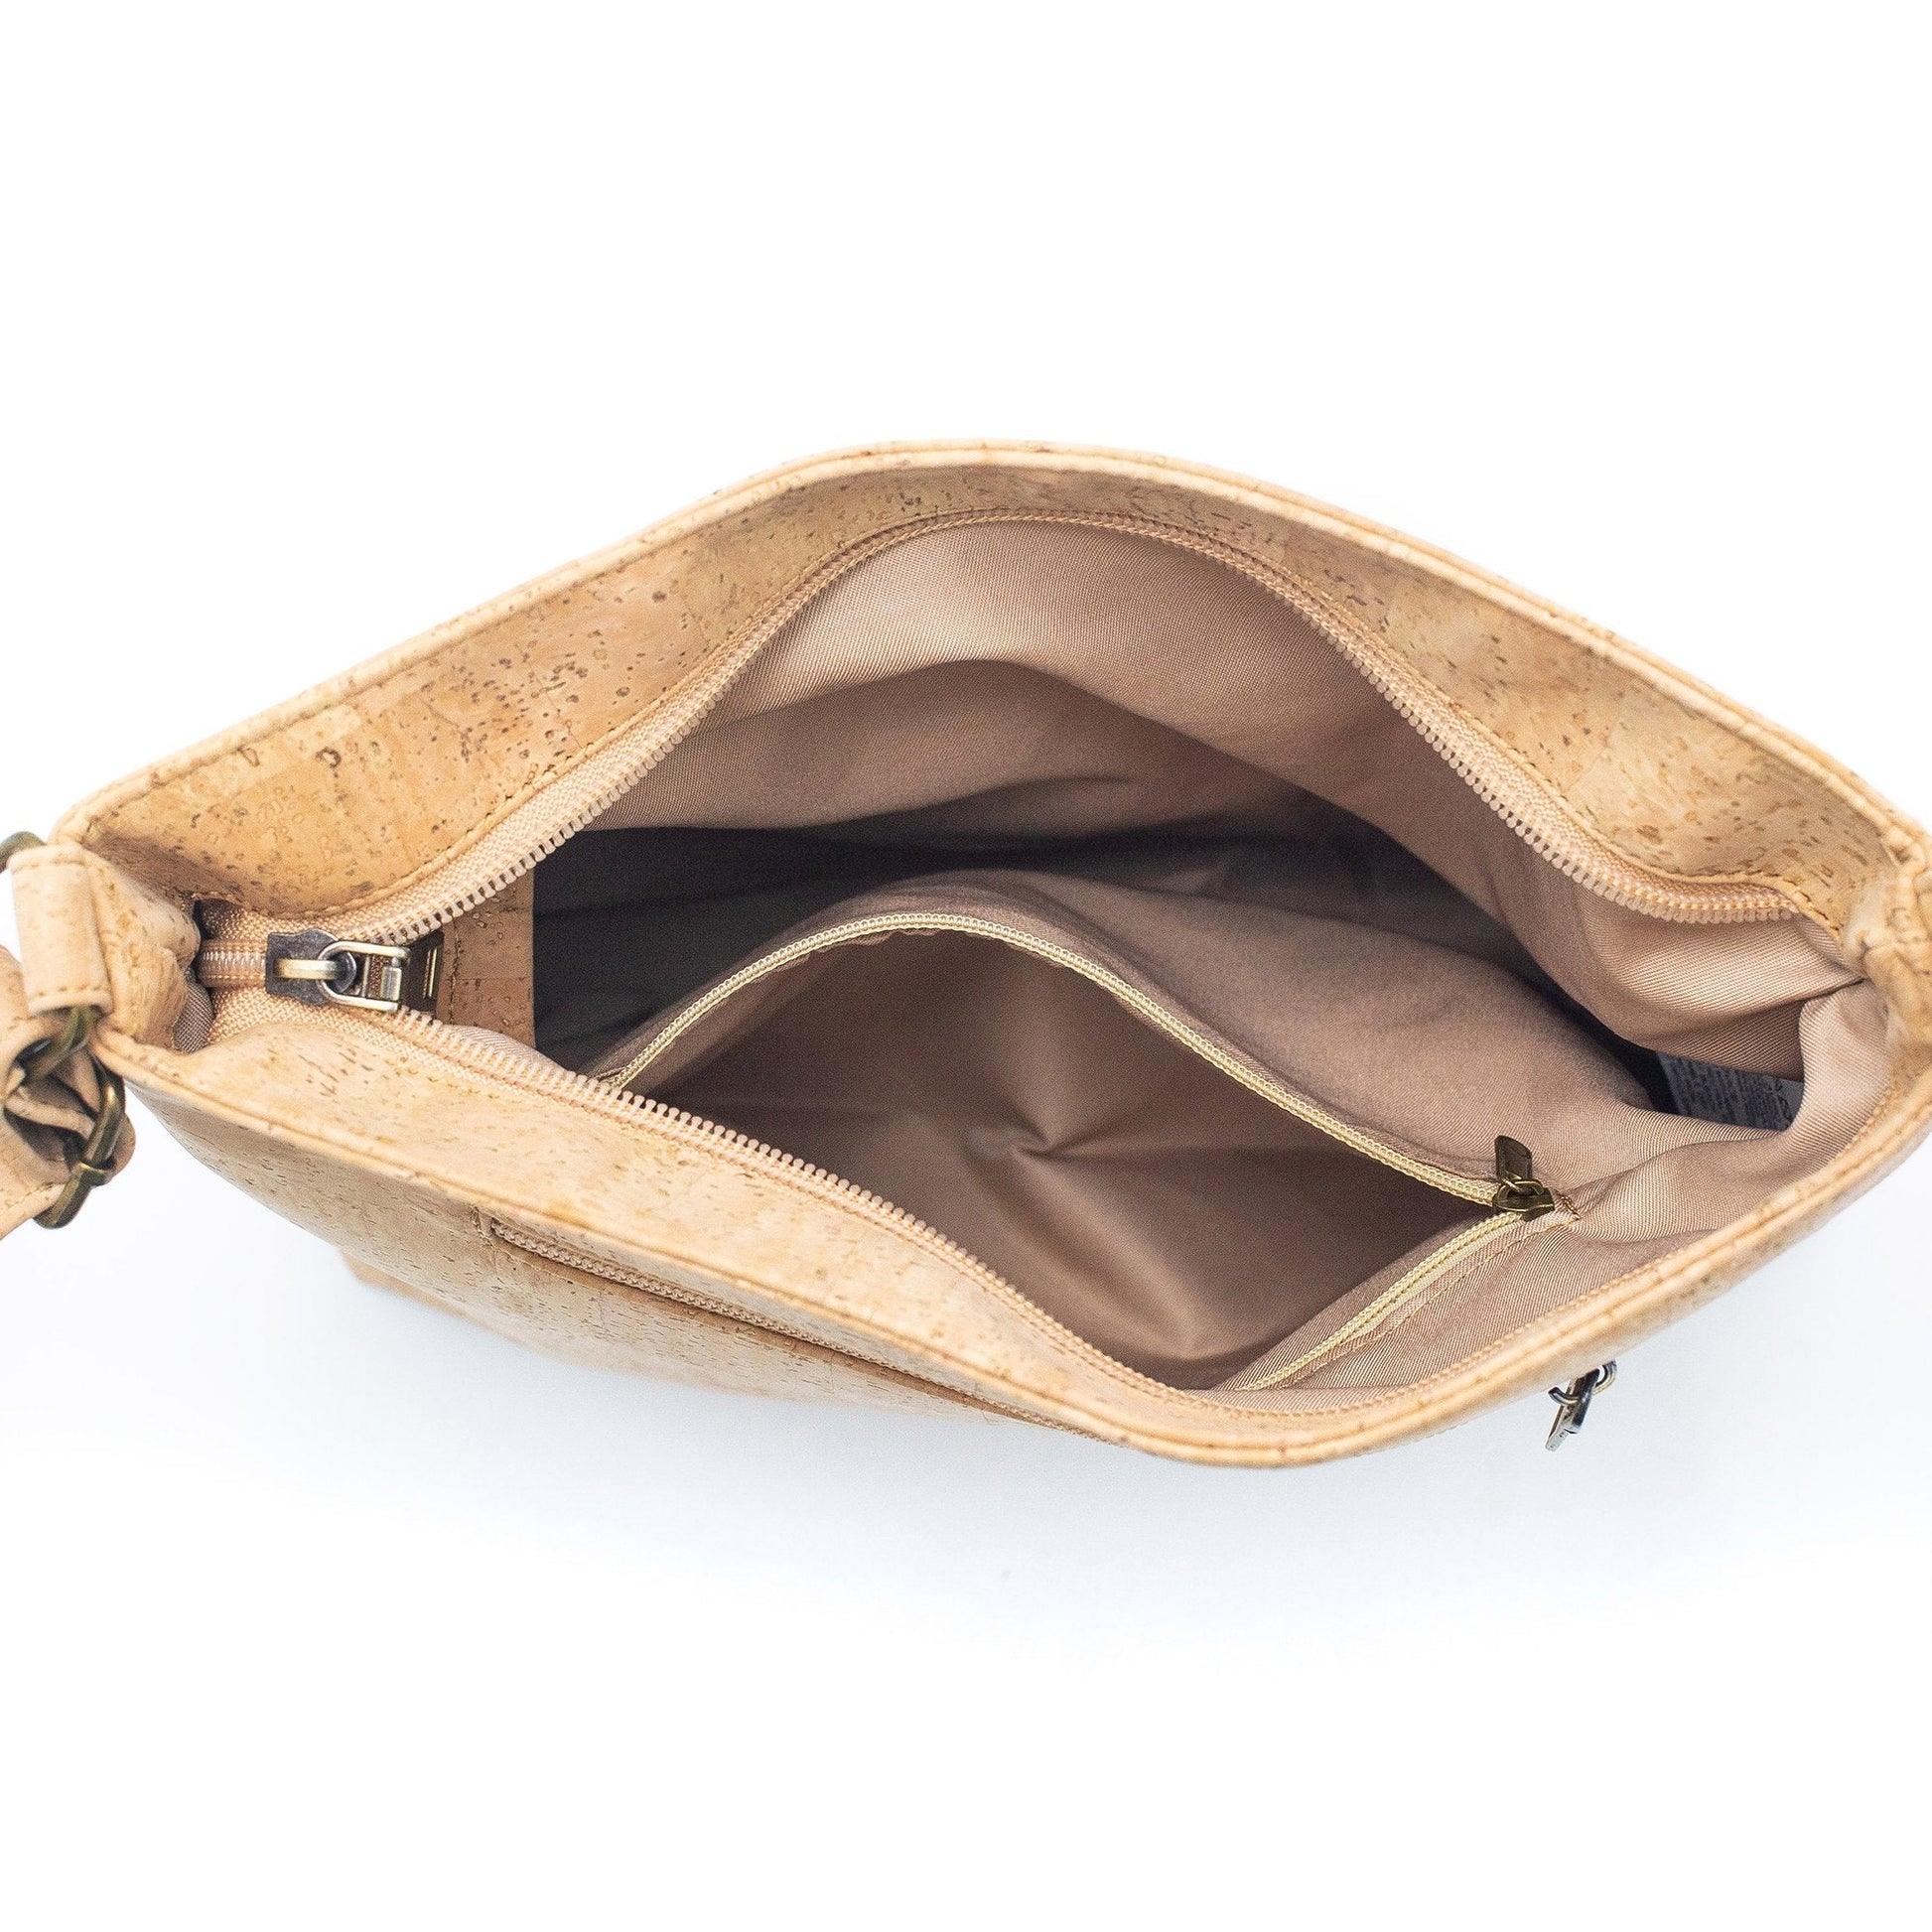 Vegan Natural & Brown Cork Double Zipper Handbag | THE CORK COLLECTION